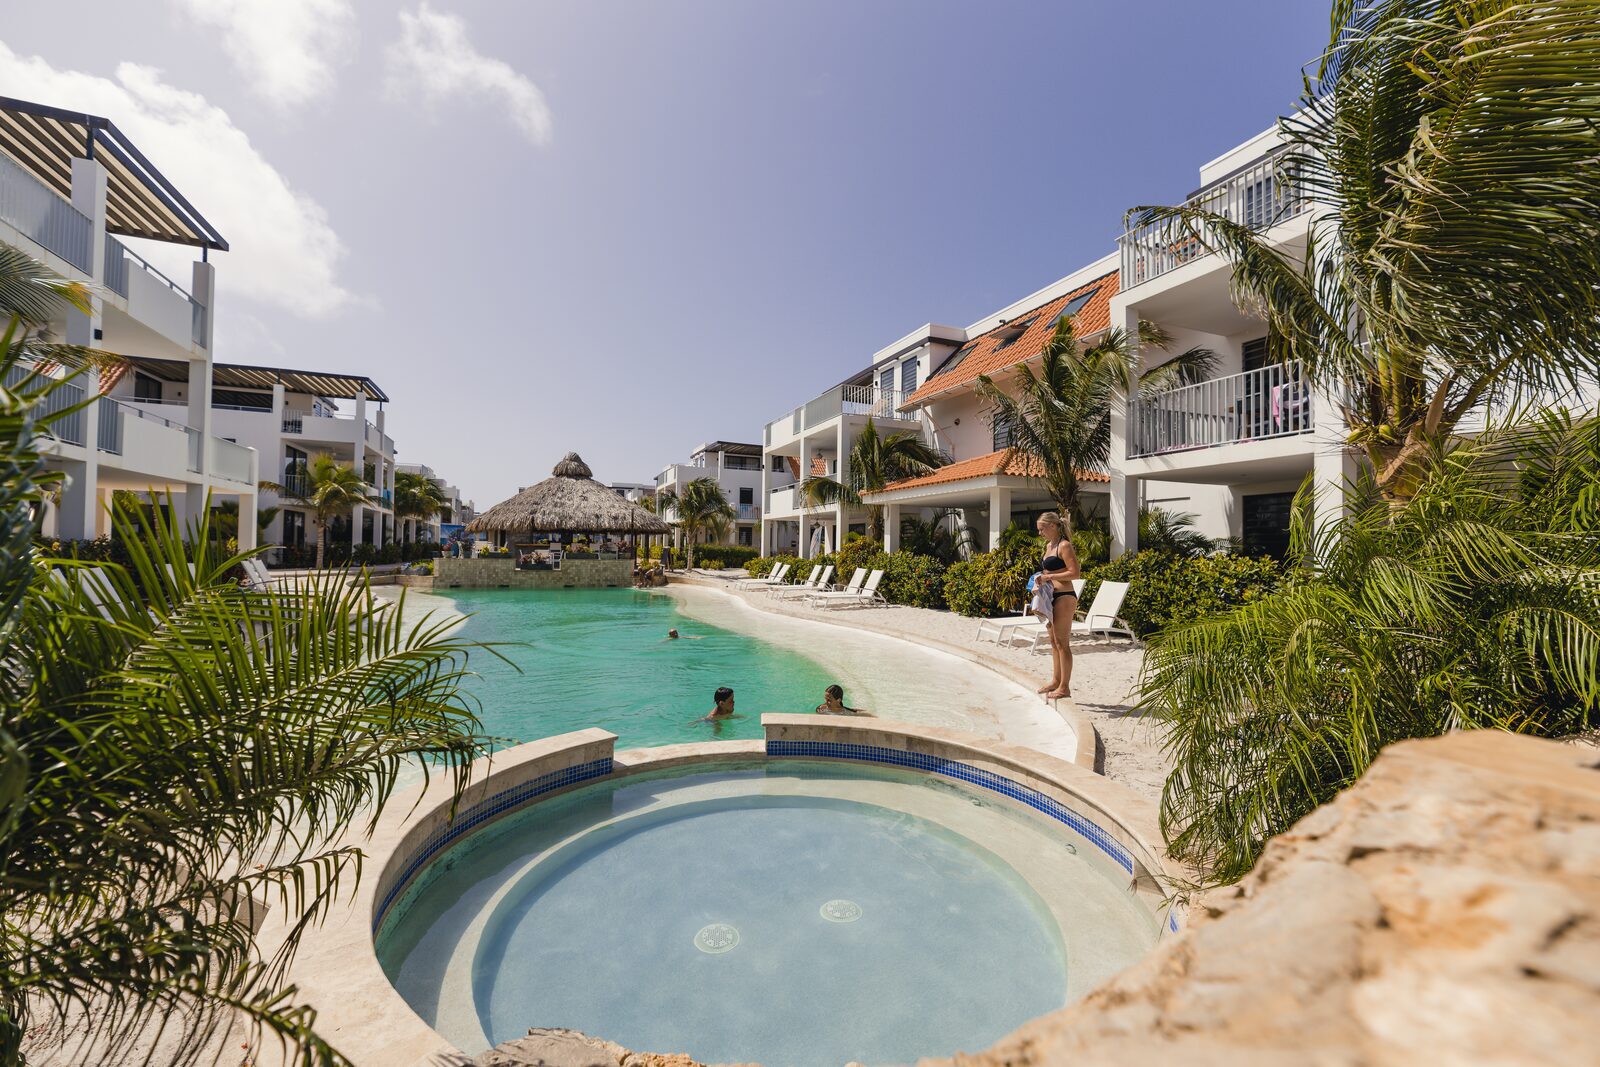 Swimming pool Resort Bonaire 